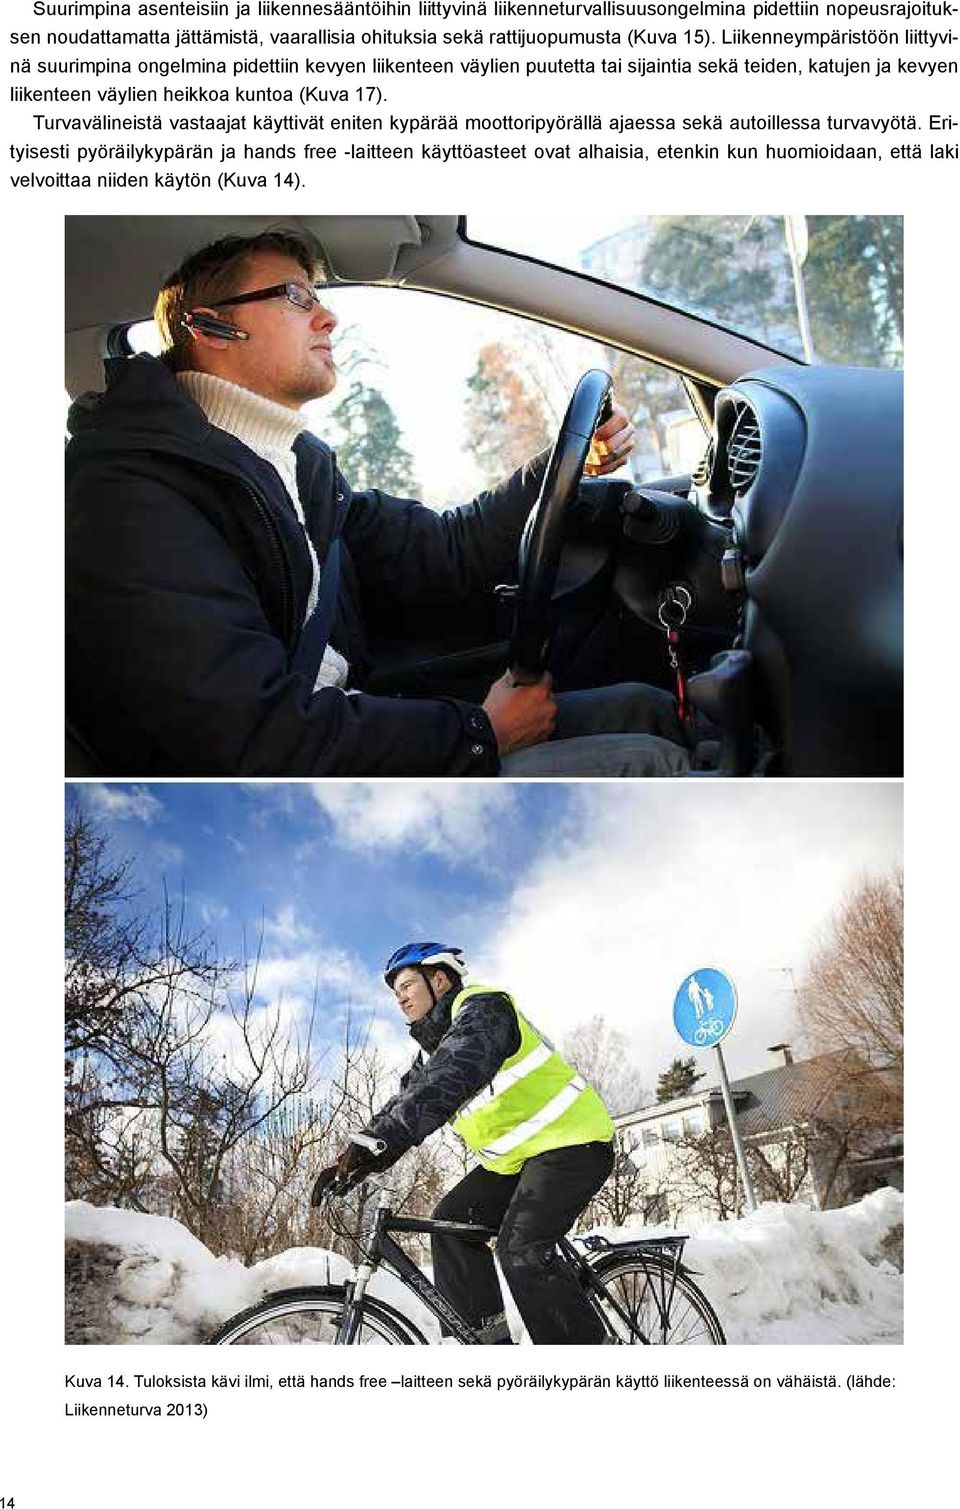 Turvavälineistä vastaajat käyttivät eniten kypärää moottoripyörällä ajaessa sekä autoillessa turvavyötä.